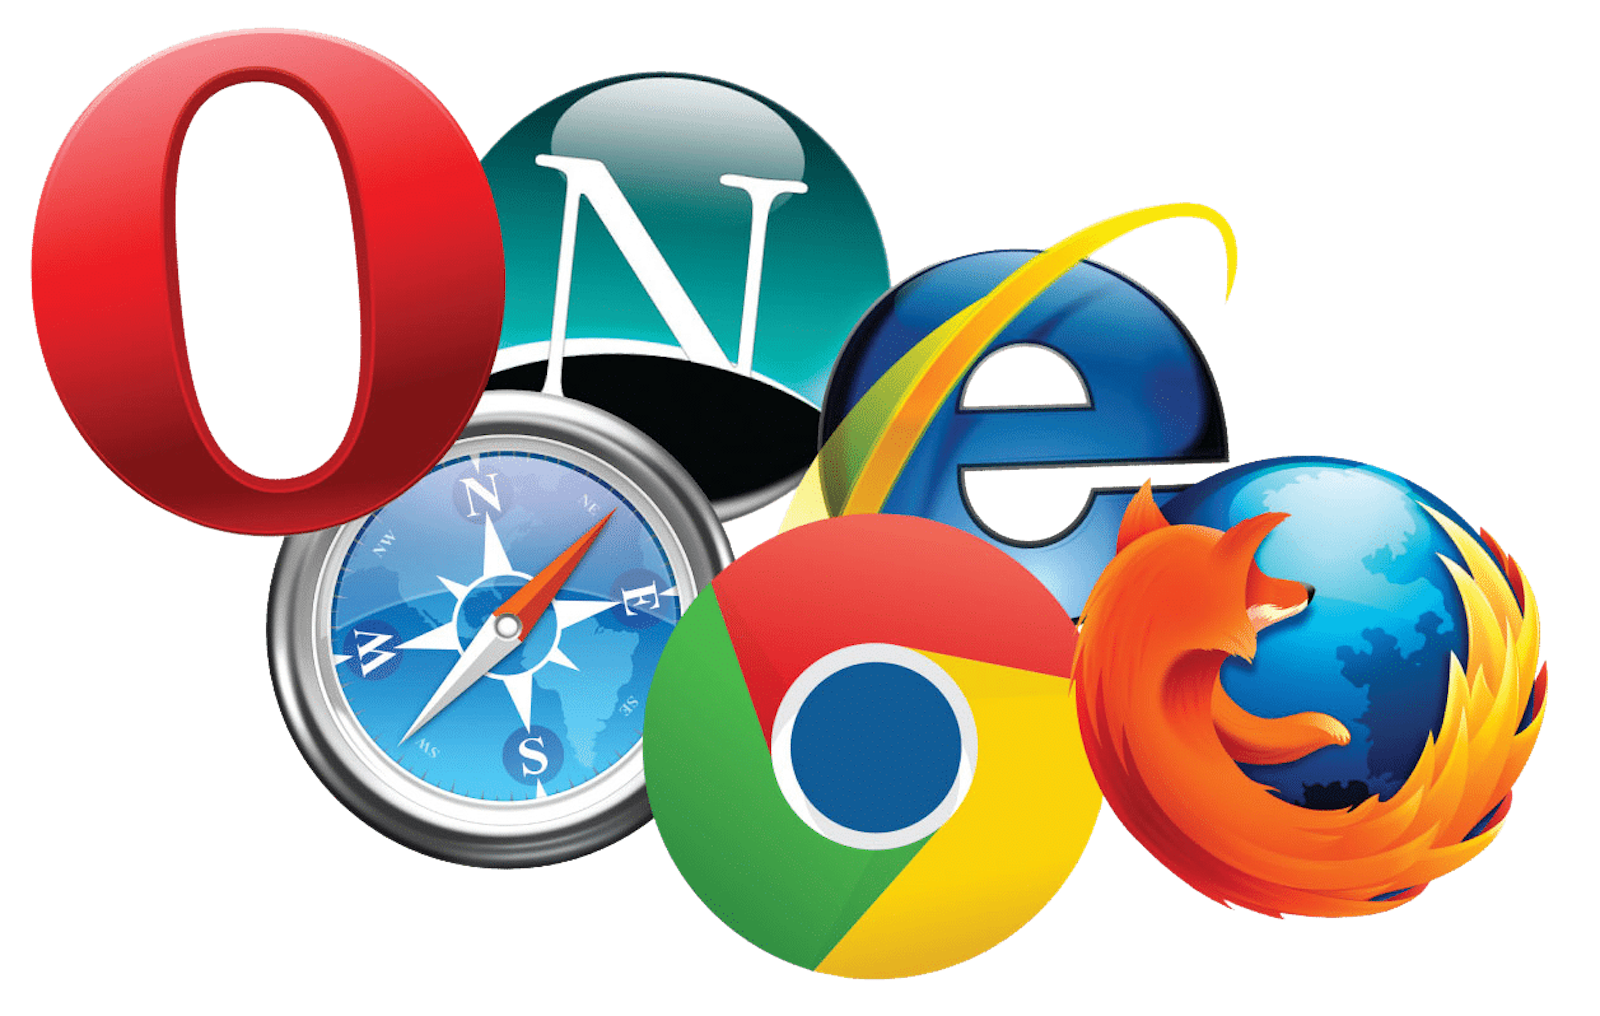 Разное сайта в разных браузерах